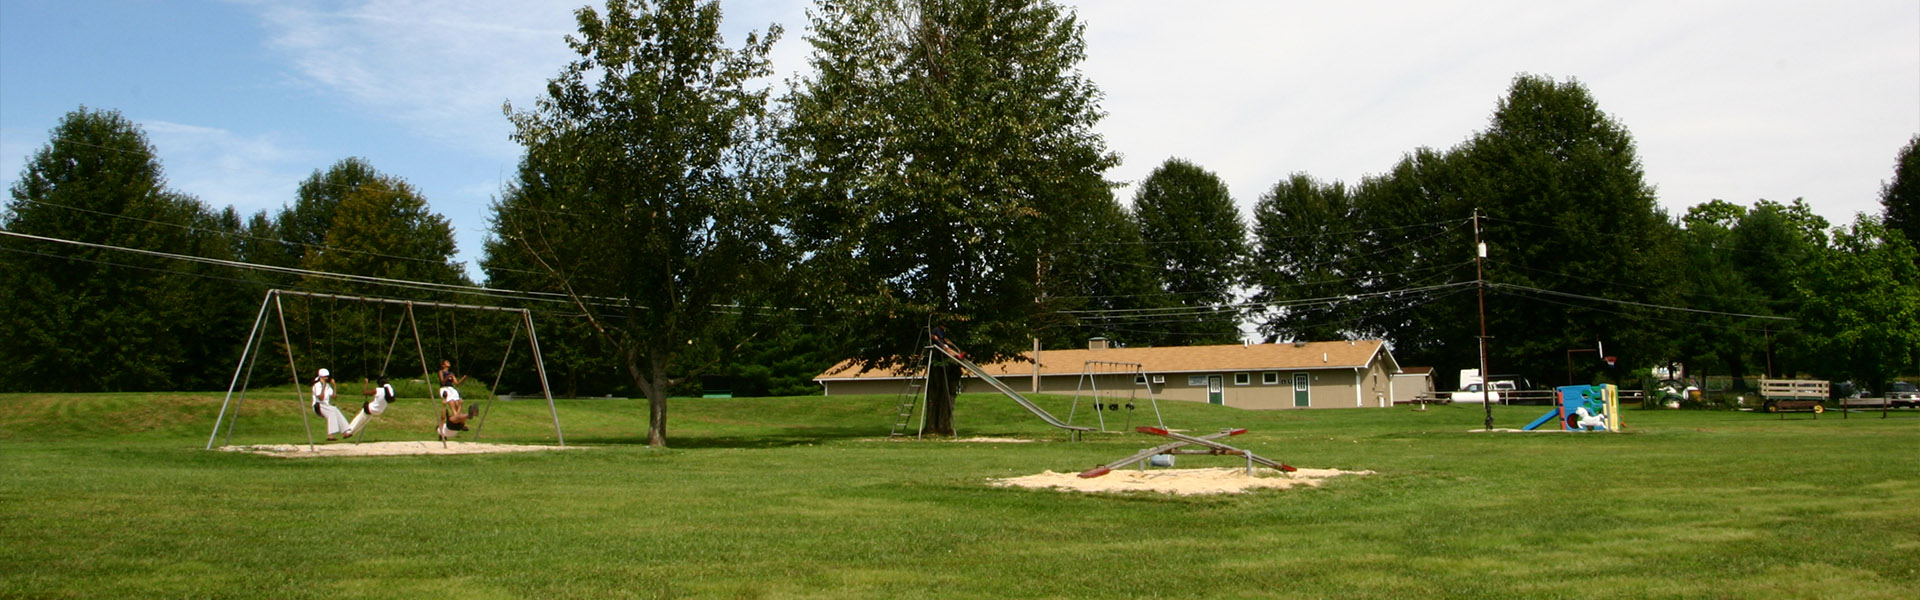 Chestnut Lake Campground - Header